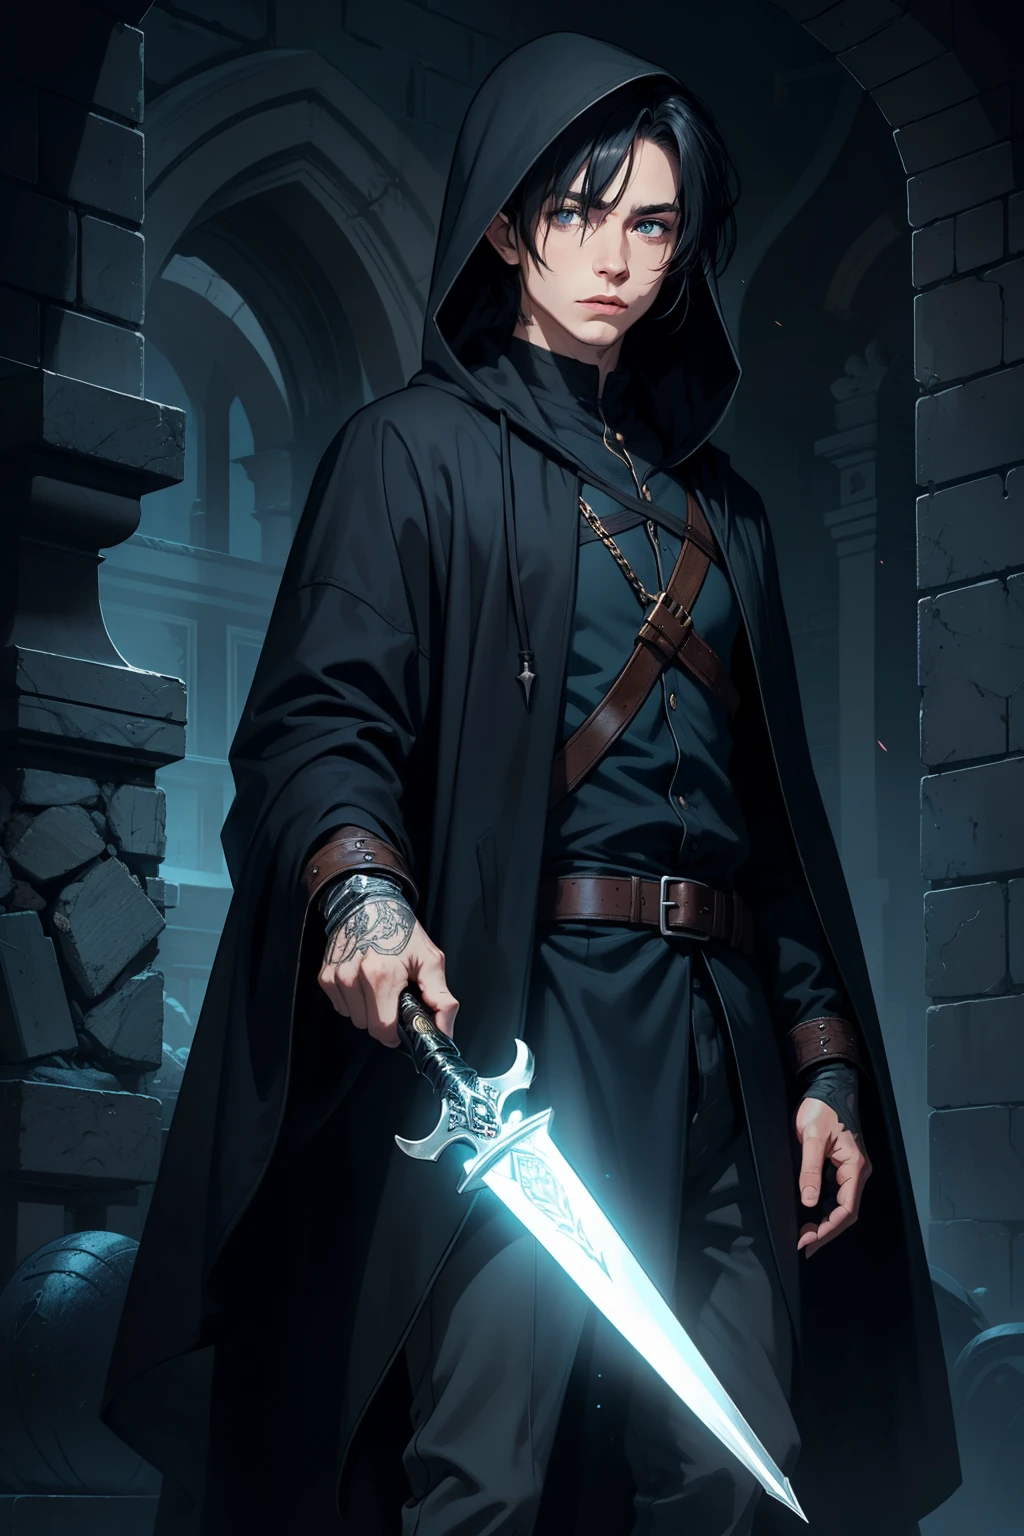 Mann geheimnisvoll Elf Assassine arkaner Trickster Schurke dunkle Robe mit Kapuze, blaue Augen, kurze schwarze Haare, mit einem Dolch, einen Zauber wirken